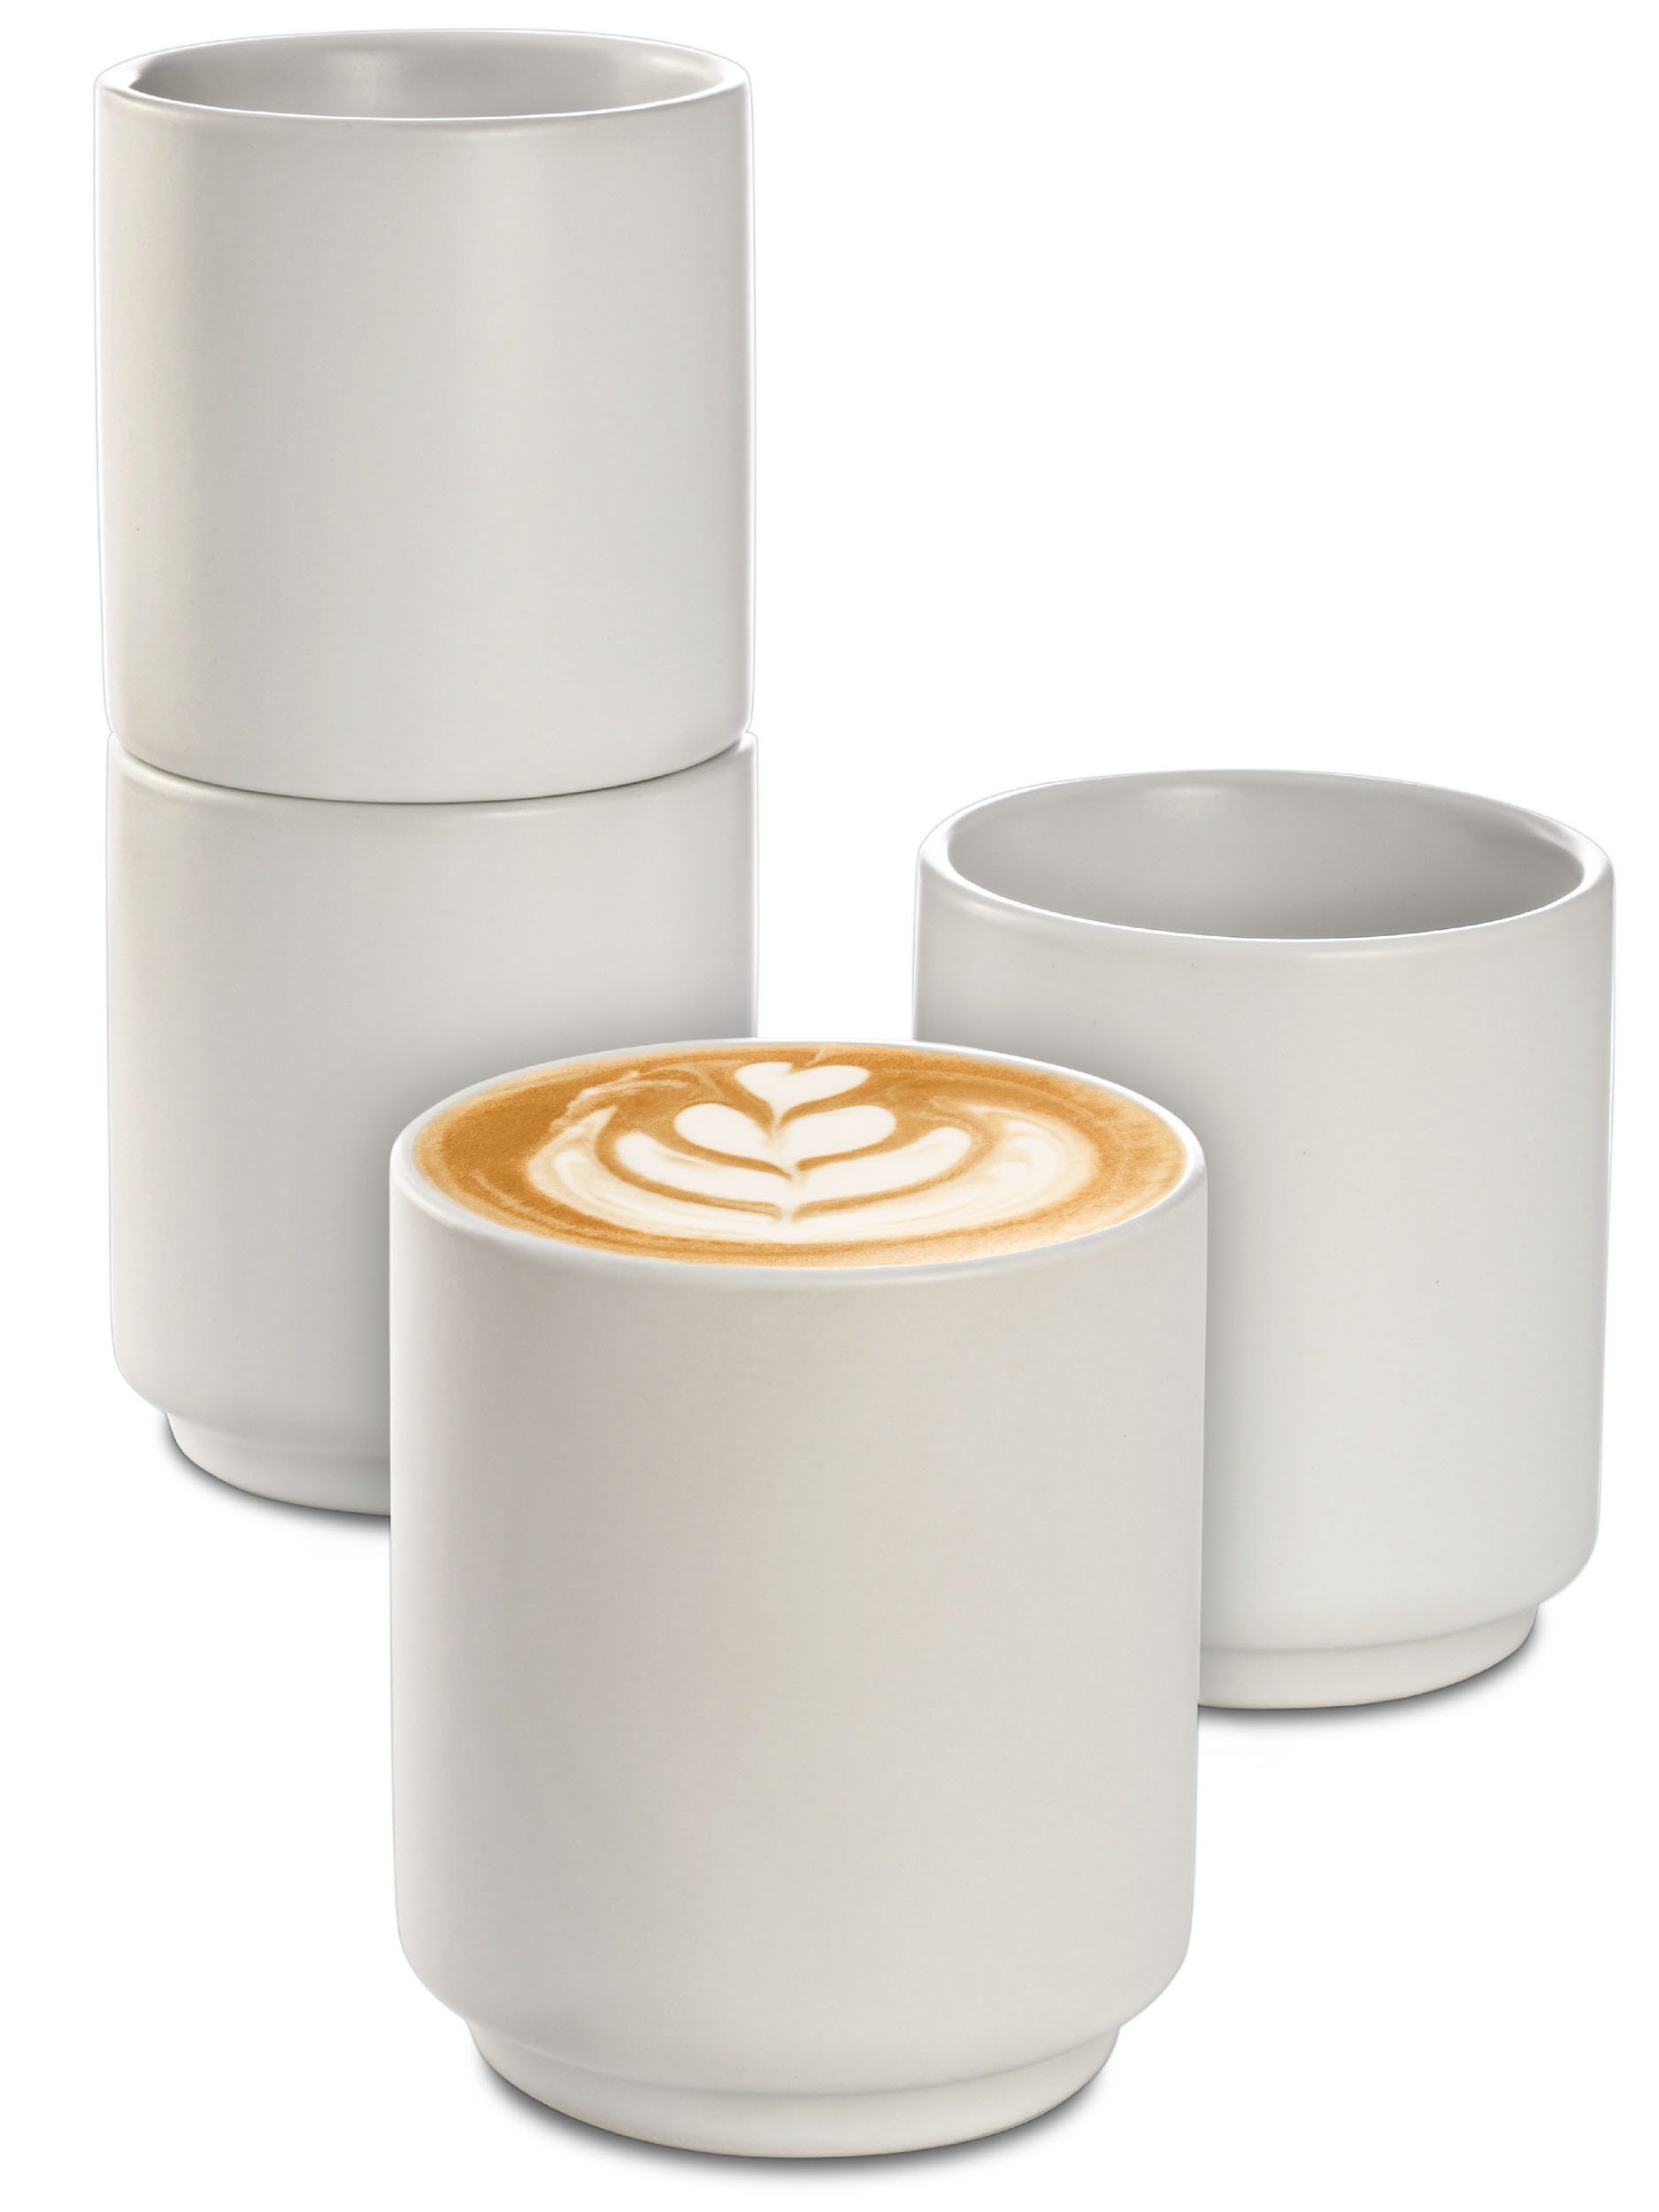 Cosumy Cappuccinotasse 4er Set Cappuccino Keramik Kaffee Tassen Groß 200 ml ohne Henkel, Keramik, Hitzebeständiges Stapelbares Design - Entworfen für Latte Art - 200 ml Weiß Matt